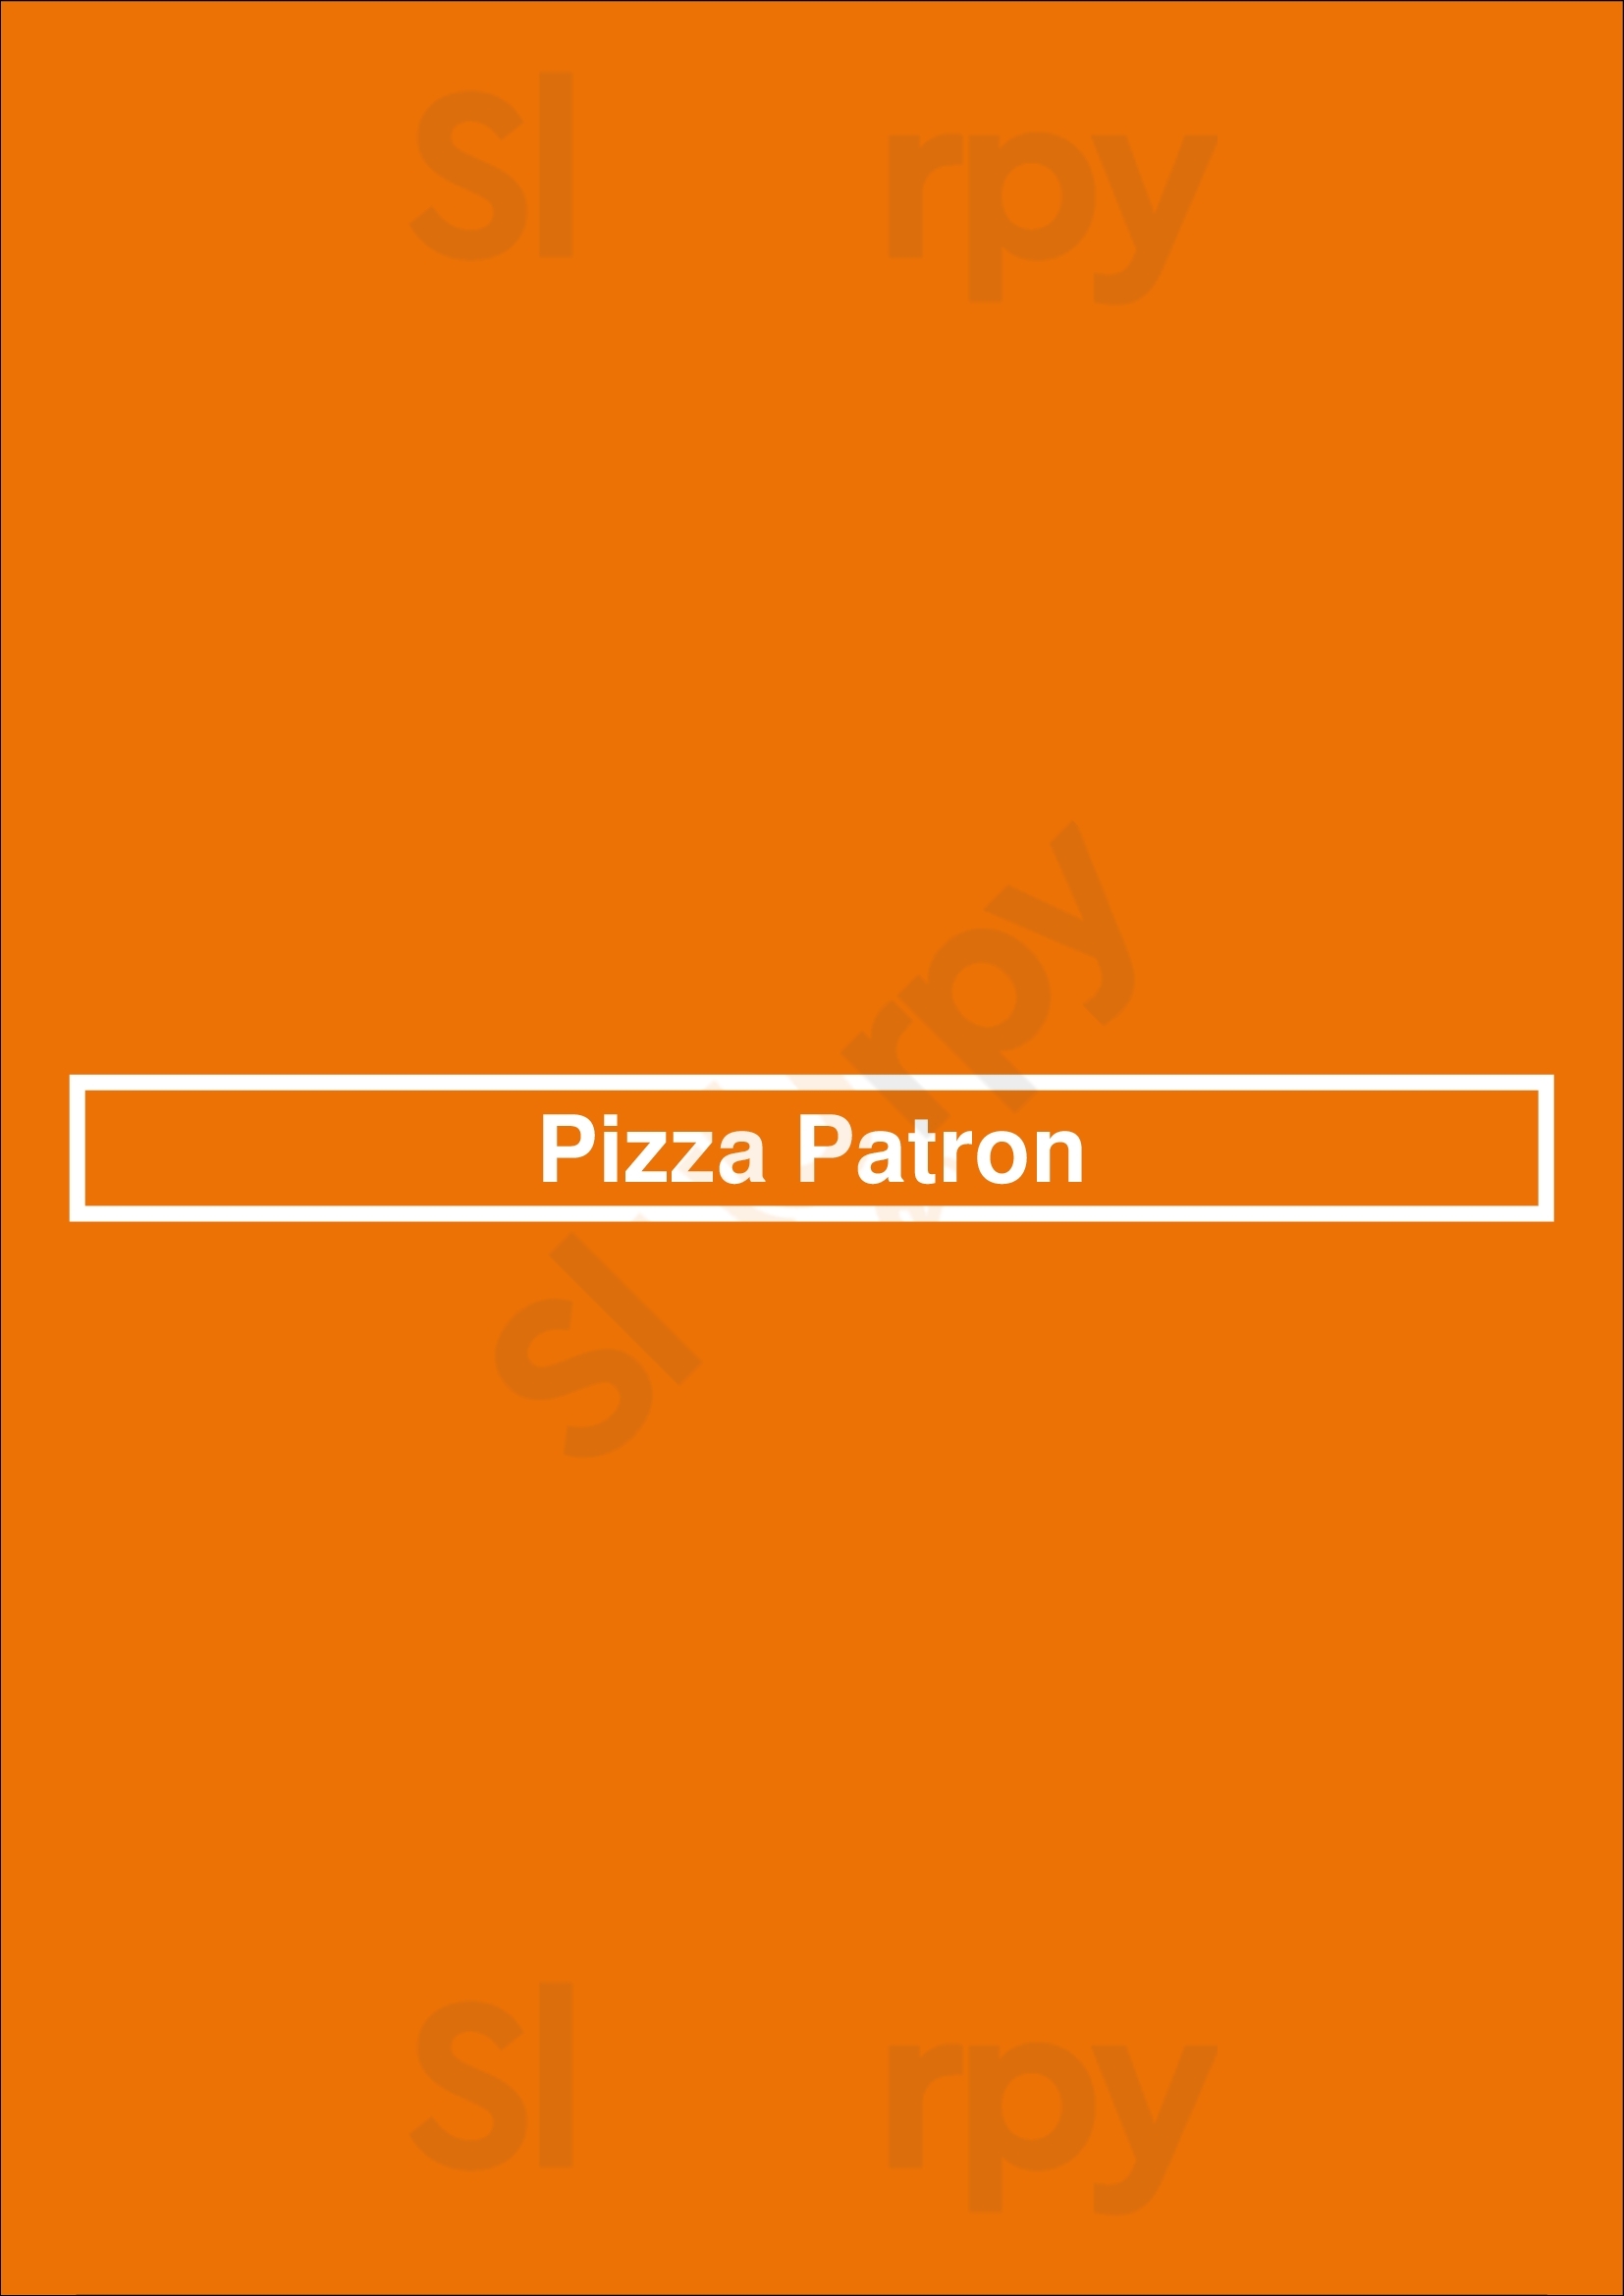 Pizza Patron San Antonio Menu - 1